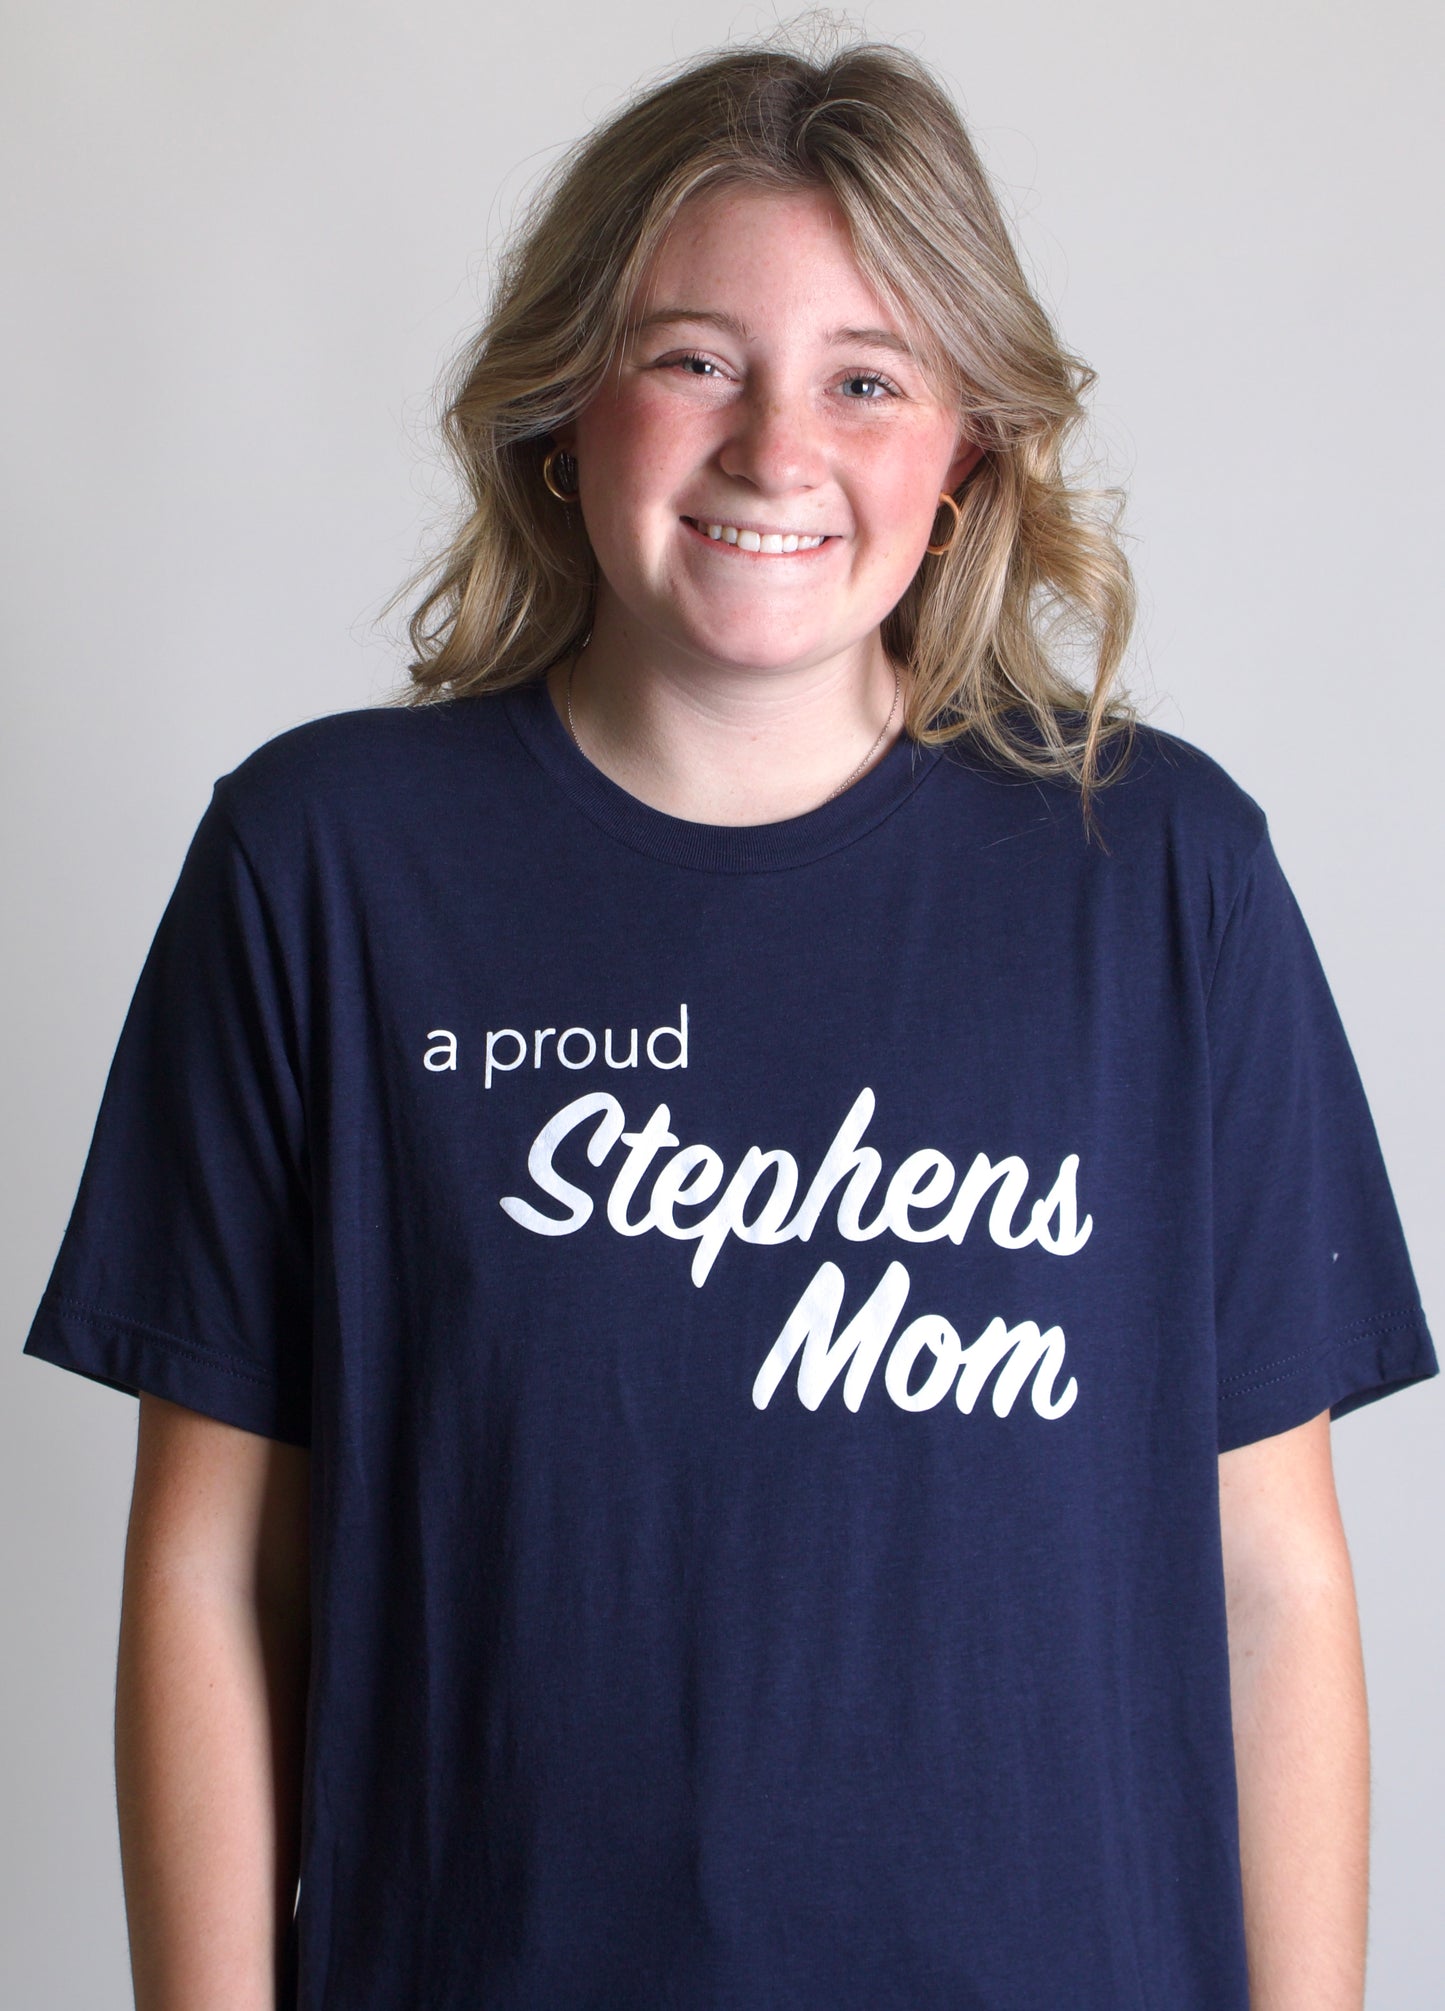 Stephens Mom Tee